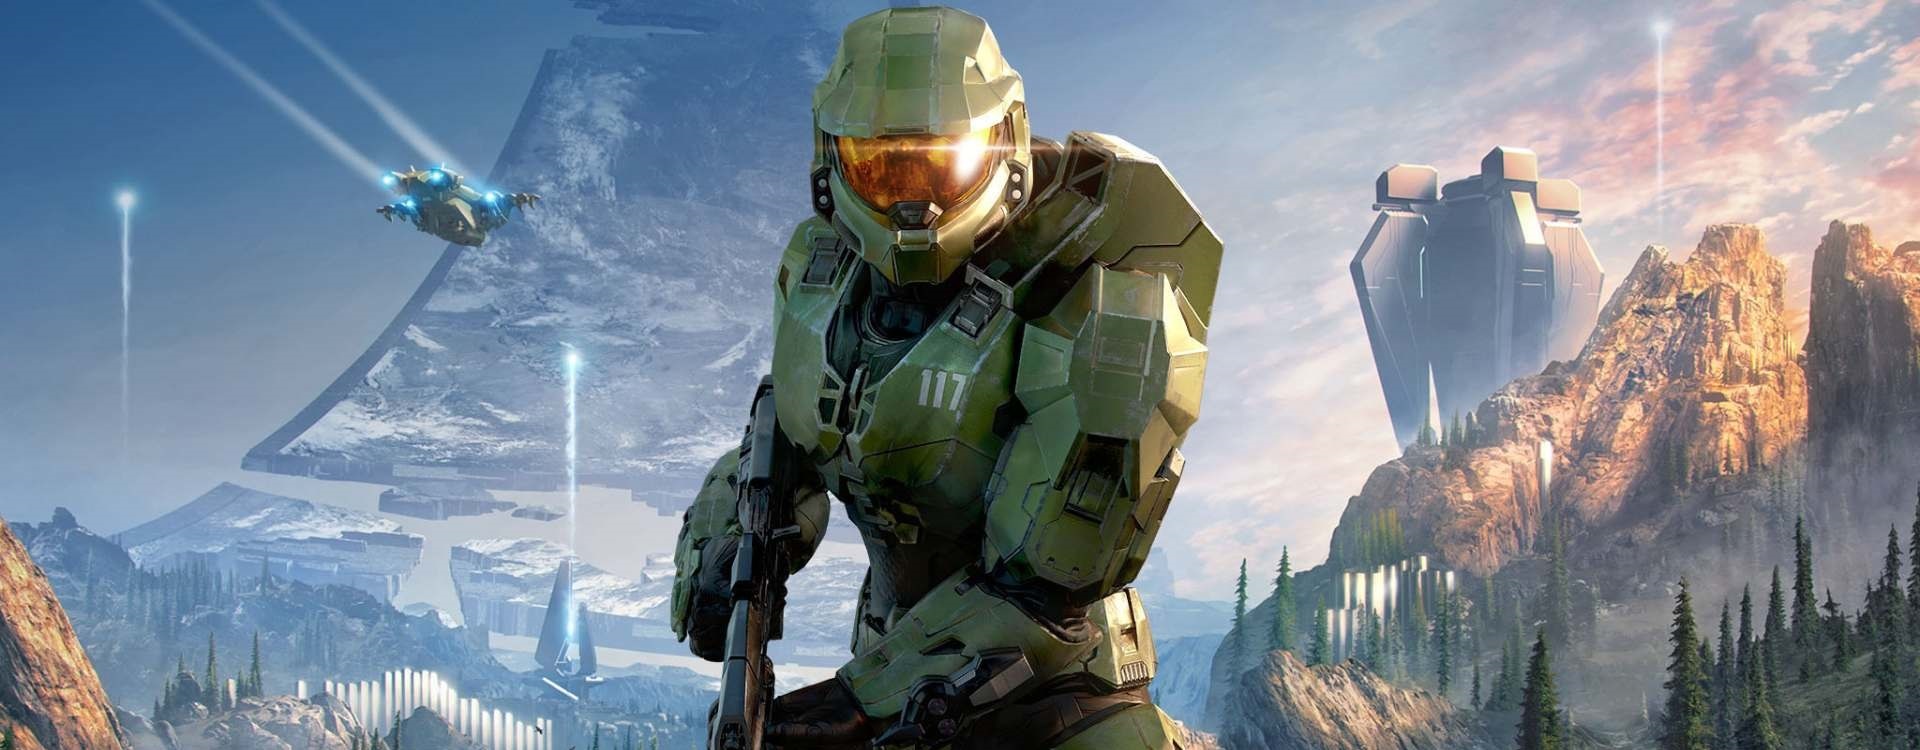 Nejlepší hry na Xbox Series X/S; screenshot: Halo Infinite